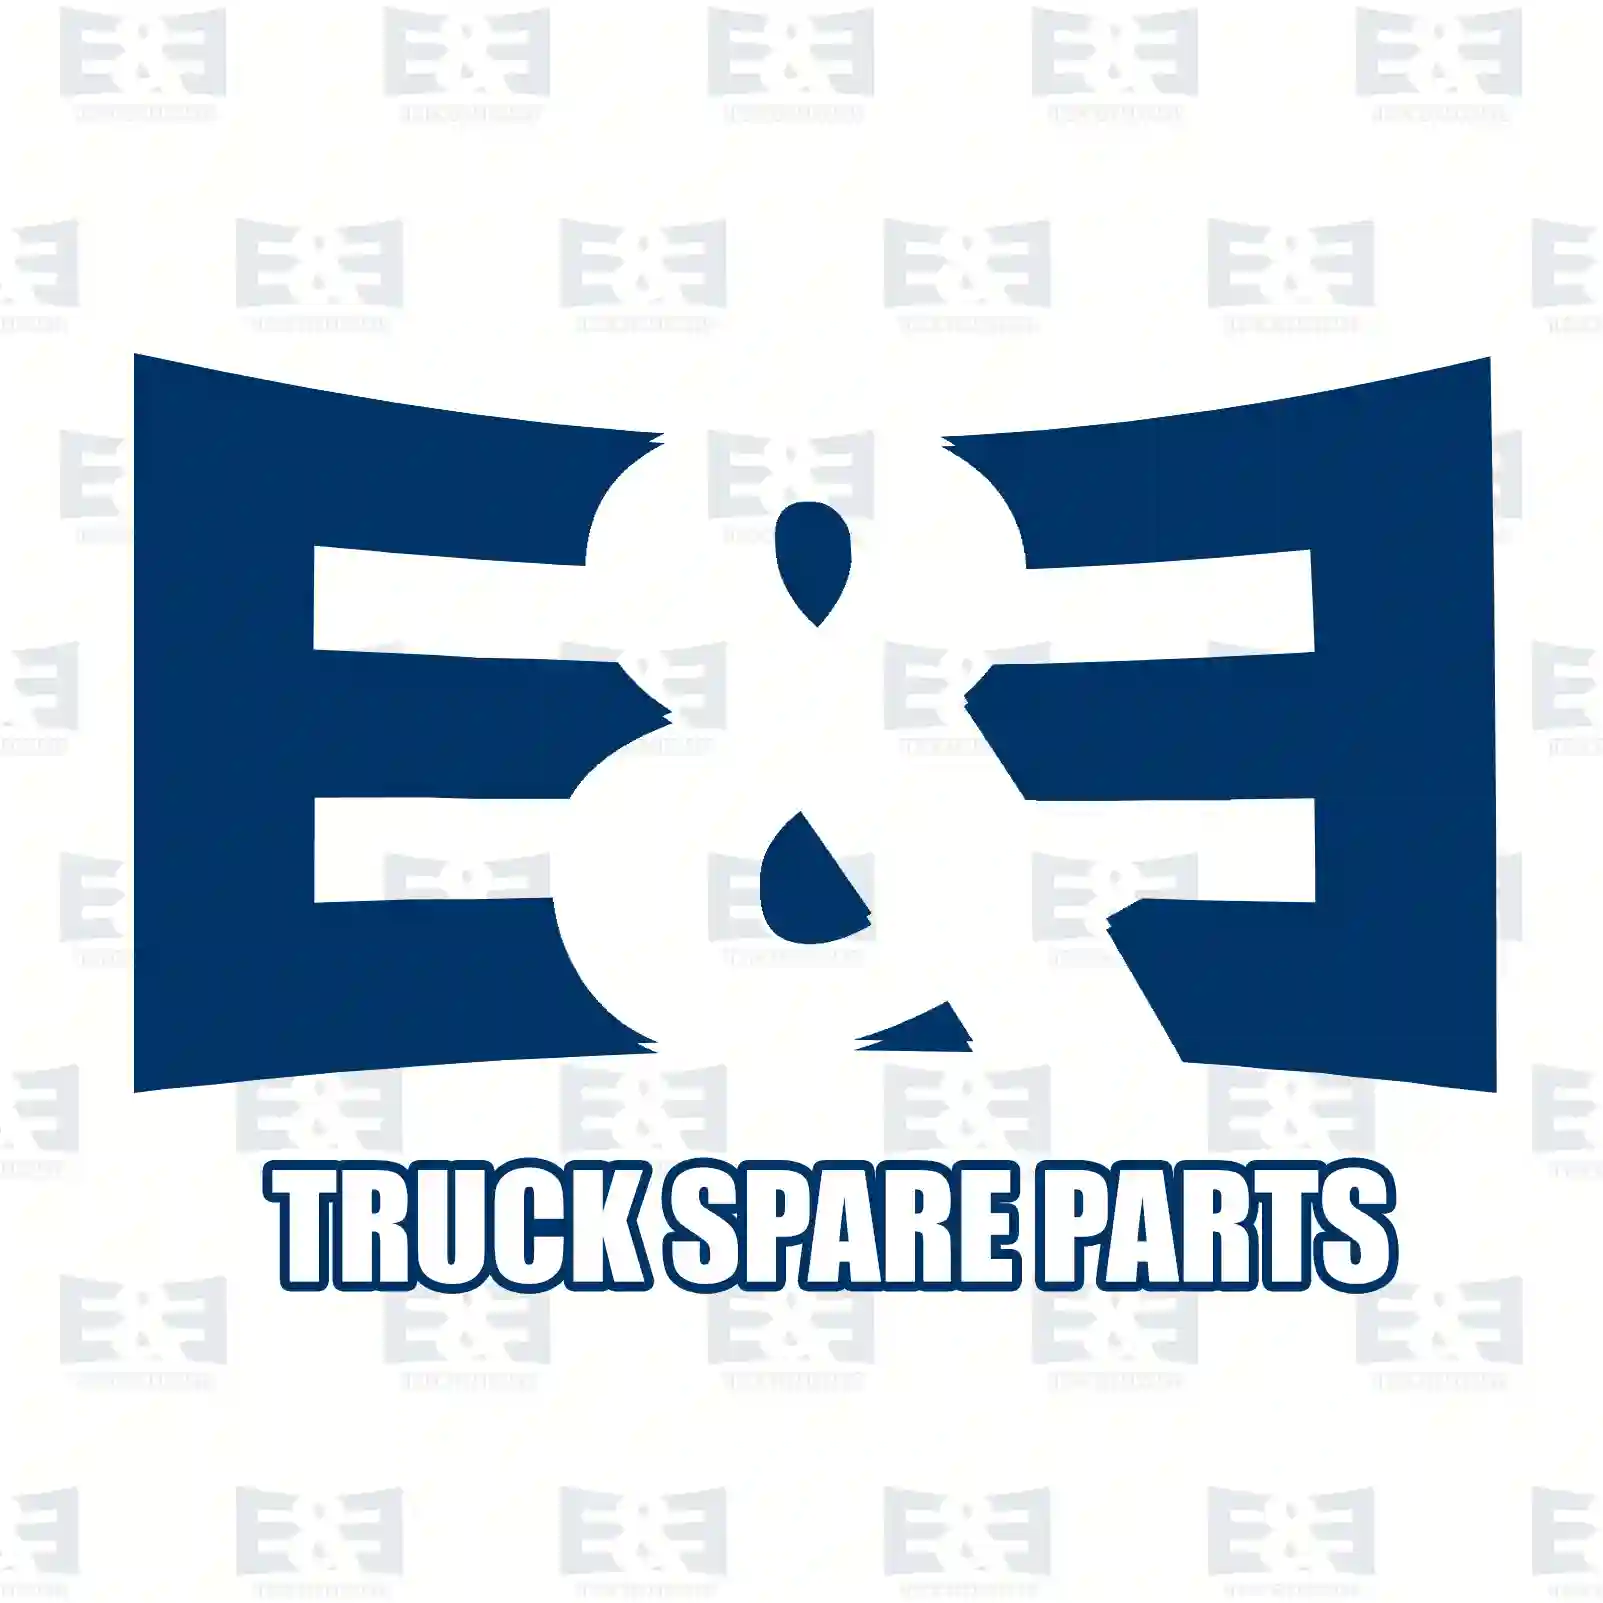 Gas spring, 2E2280193, 504329952, ZG60860-0008, ||  2E2280193 E&E Truck Spare Parts | Truck Spare Parts, Auotomotive Spare Parts Gas spring, 2E2280193, 504329952, ZG60860-0008, ||  2E2280193 E&E Truck Spare Parts | Truck Spare Parts, Auotomotive Spare Parts